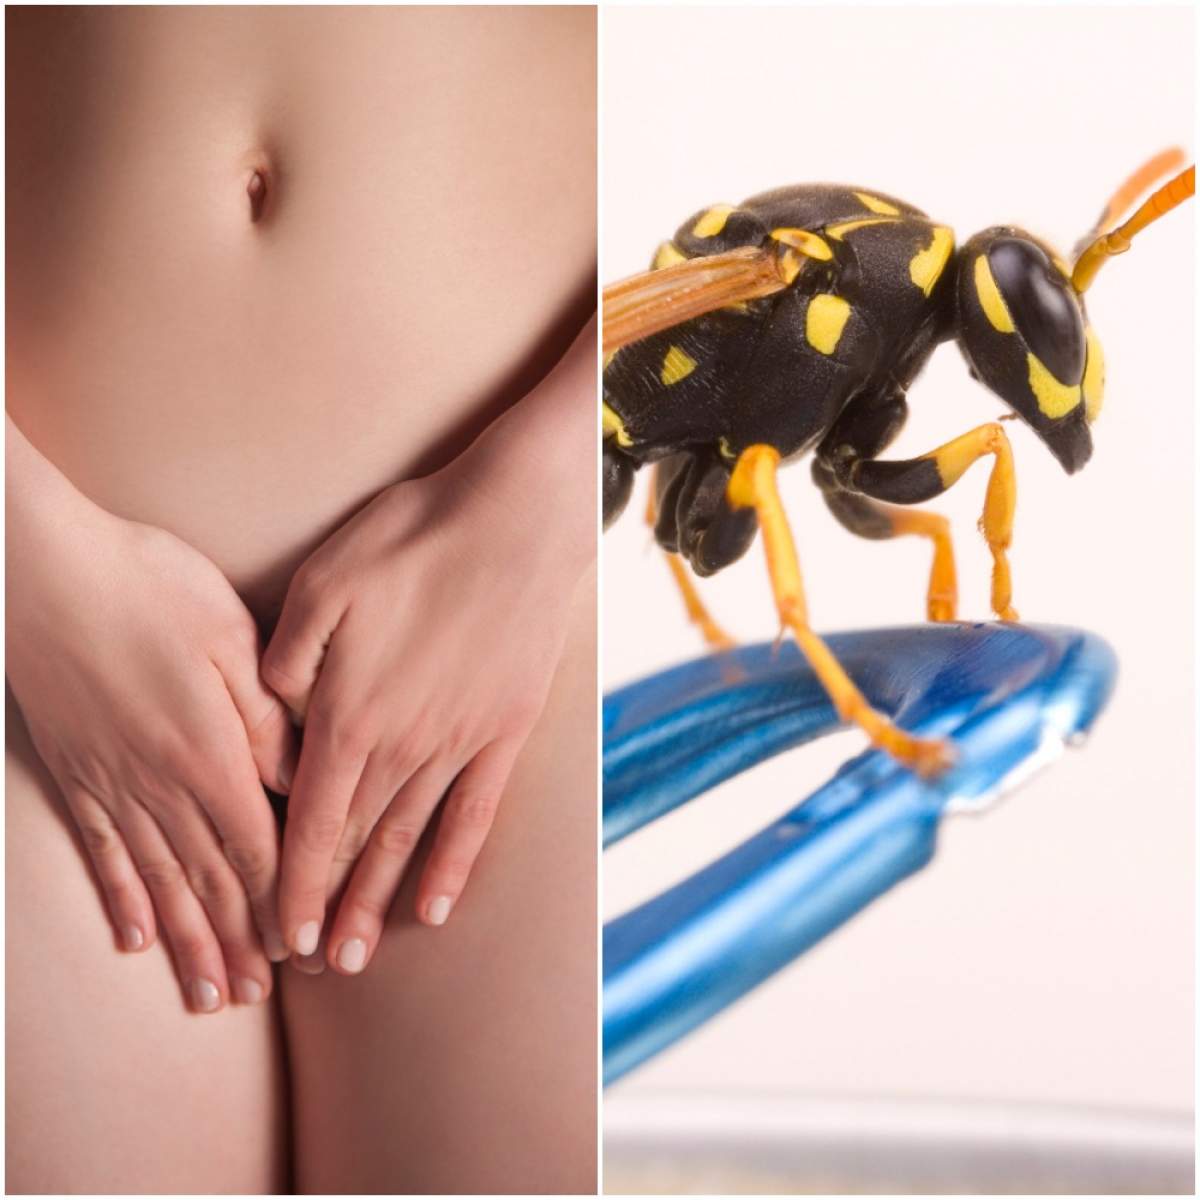 Frumusețe fără limite! Există tratamentul cu cuibi de viespi pentru zonele intime... și este foarte periculos